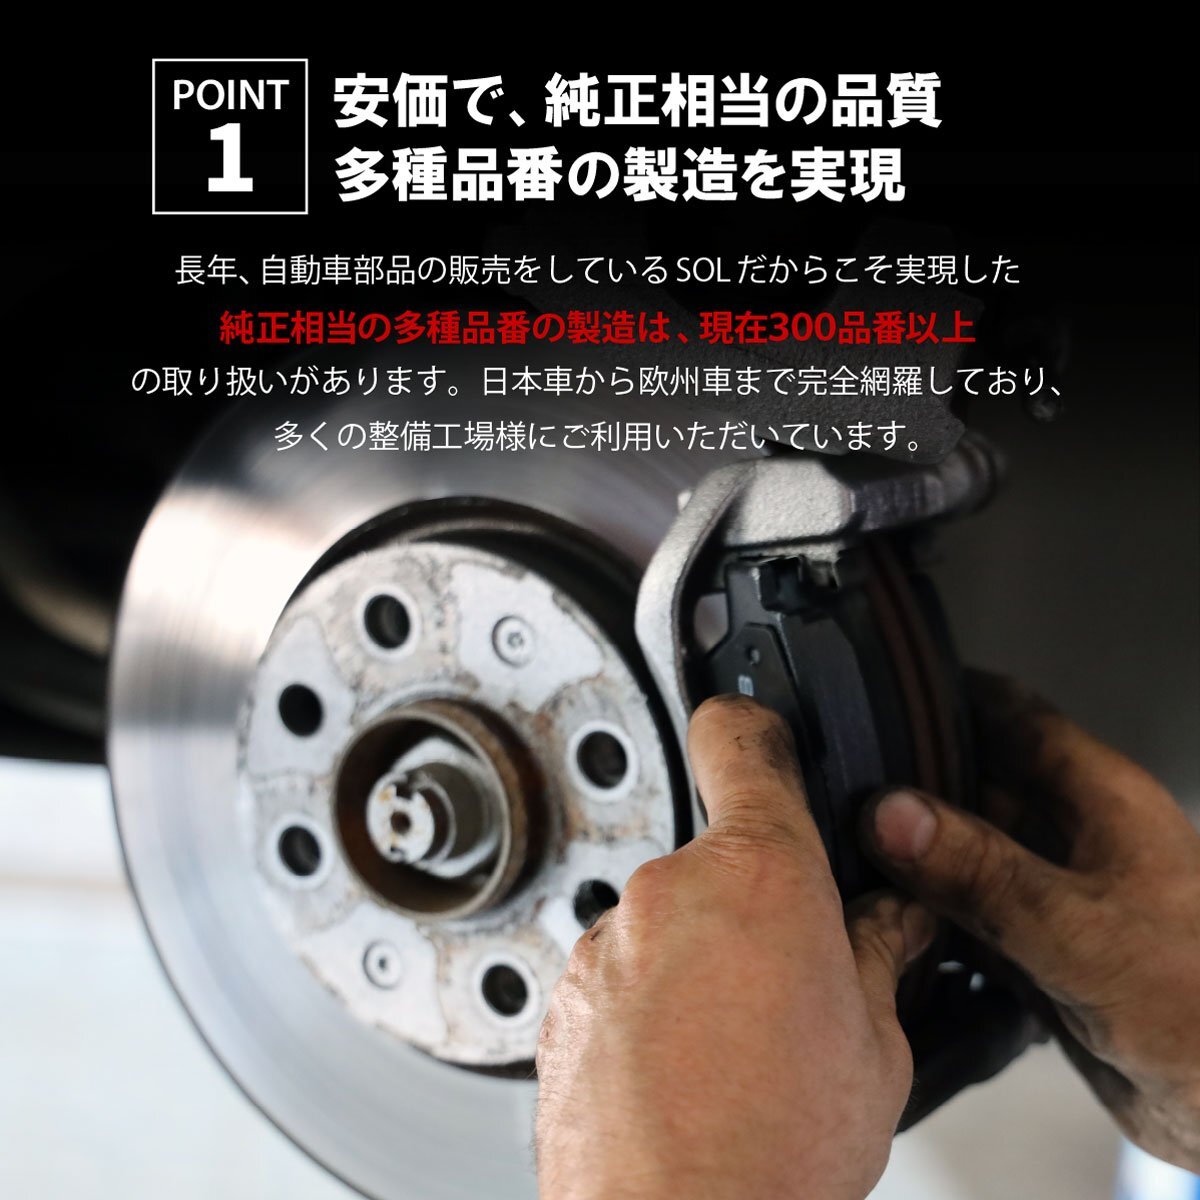  Toyota Probox NCP50V NCP51V передние тормозные накладки тормозная накладка левый и правый в комплекте отгрузка конечный срок 18 час марка машины особый дизайн 04465-52041